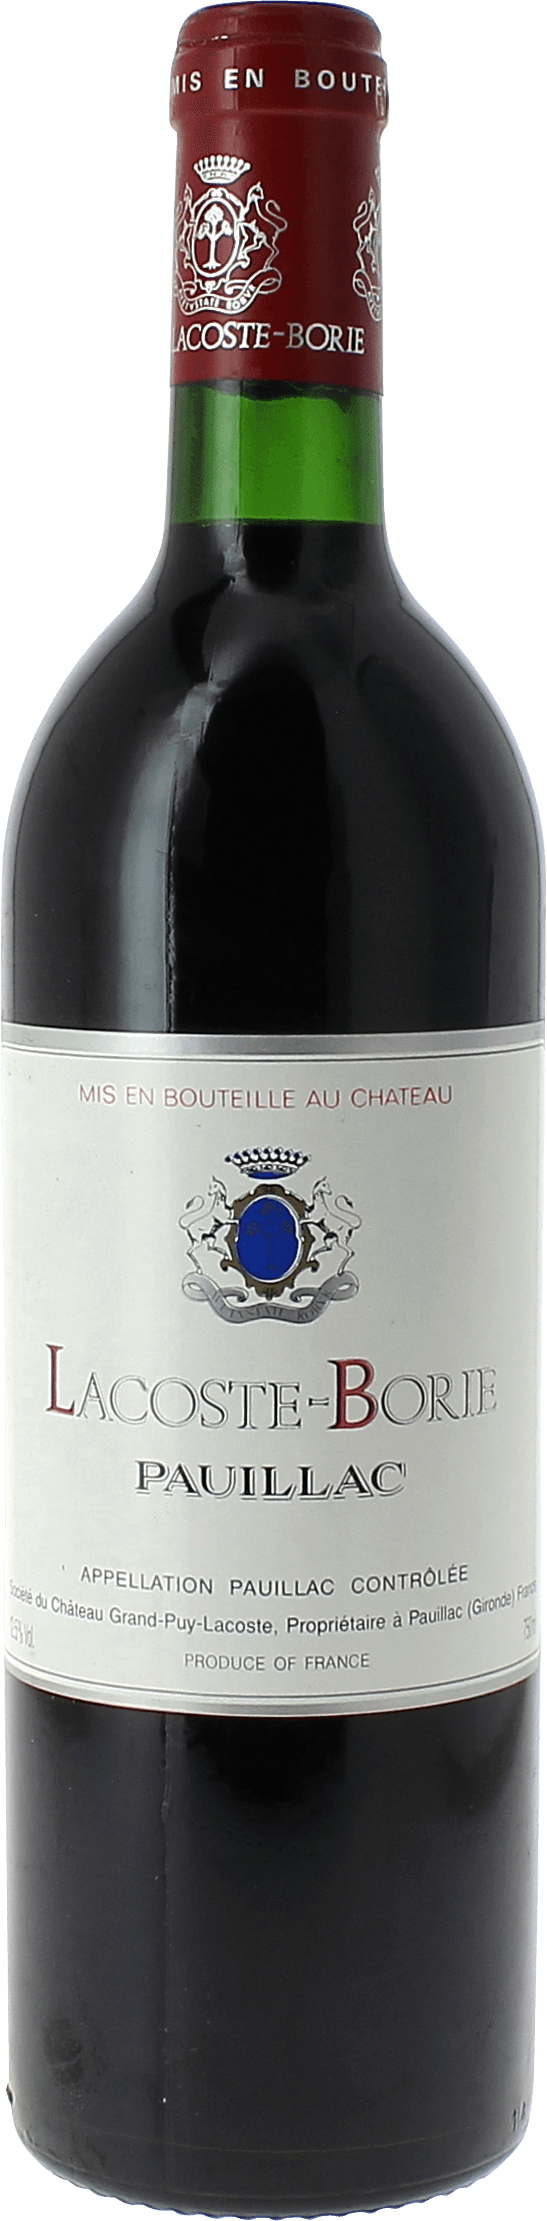 Lacoste borie 2019 5 me Grand cru class Pauillac, Bordeaux rouge